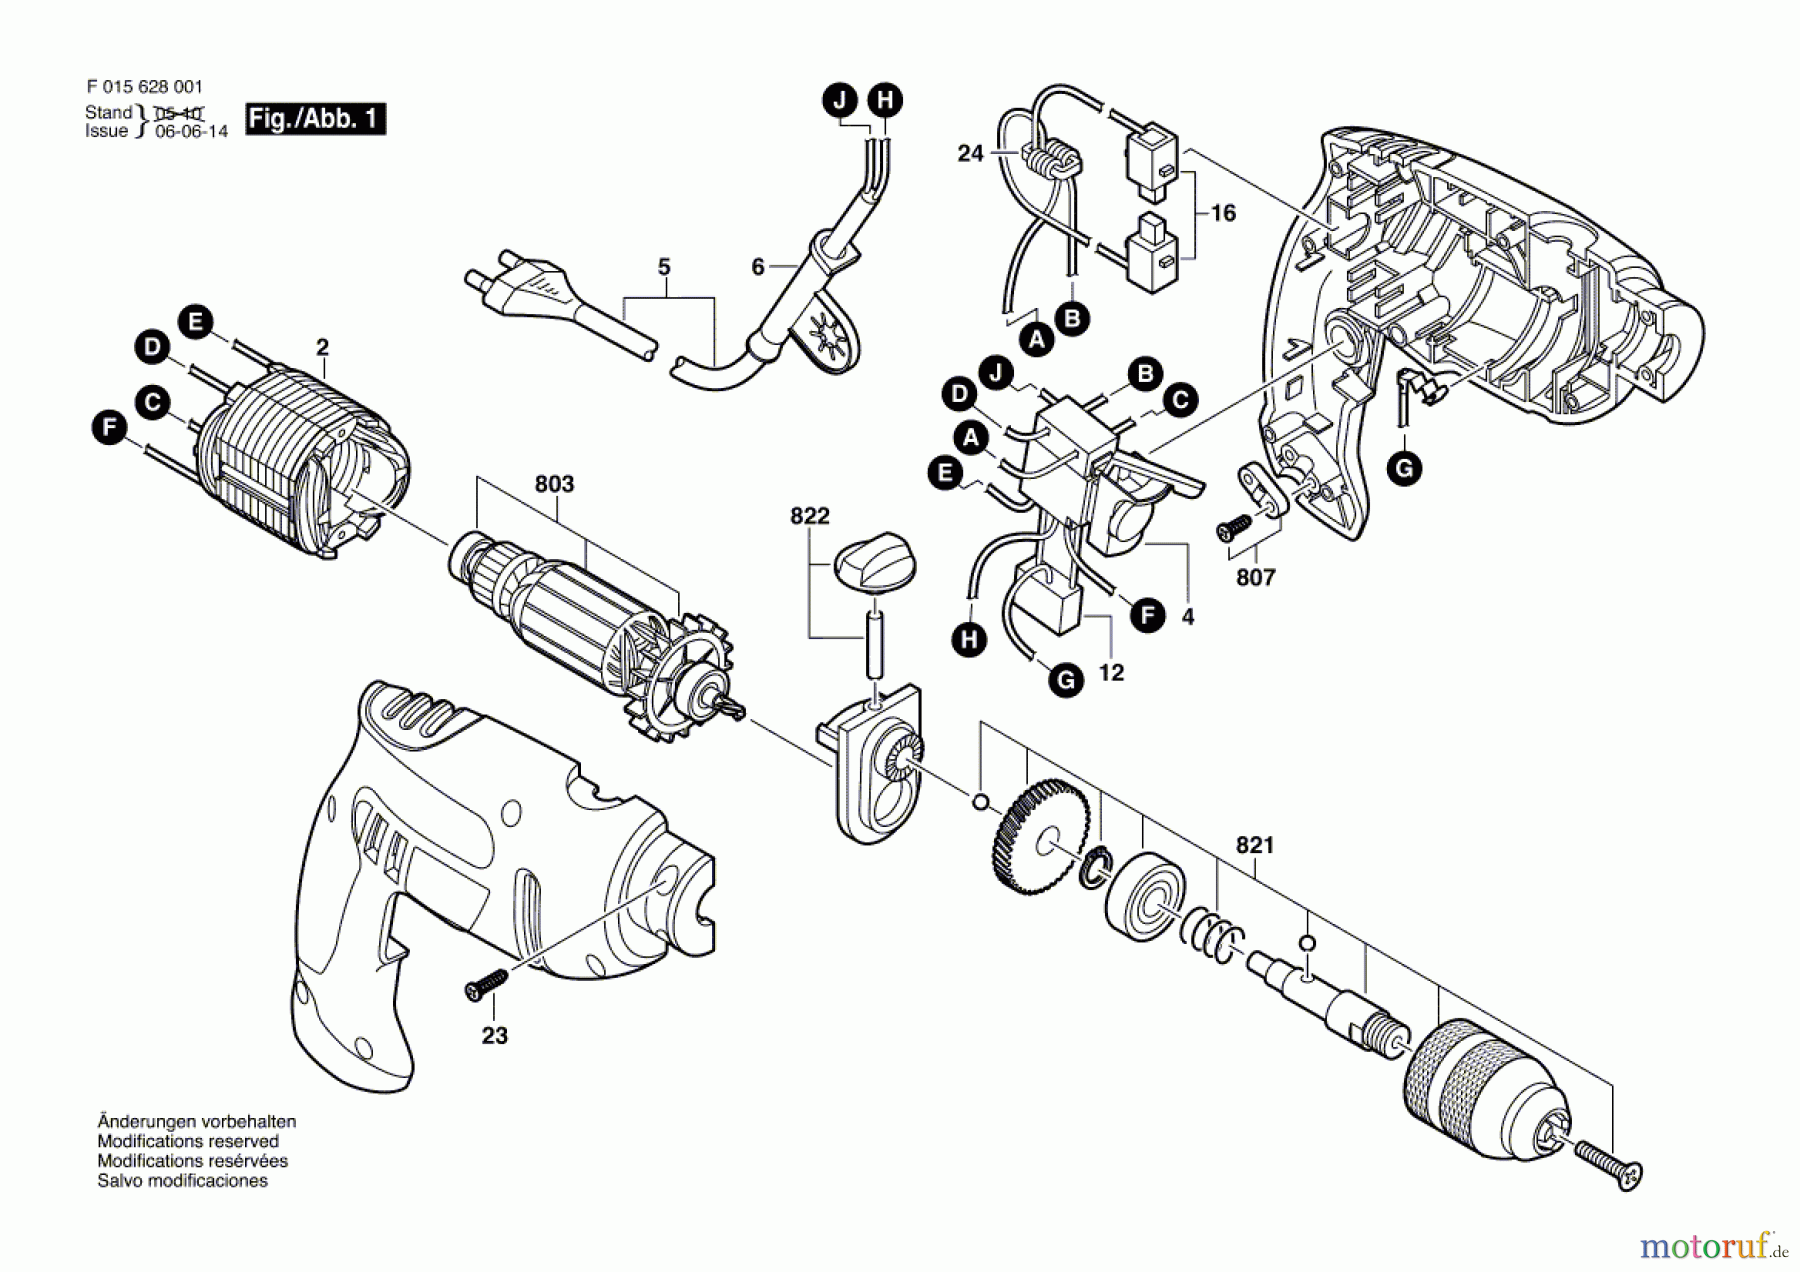  Bosch Werkzeug Schlagbohrmaschine 6260 Seite 1